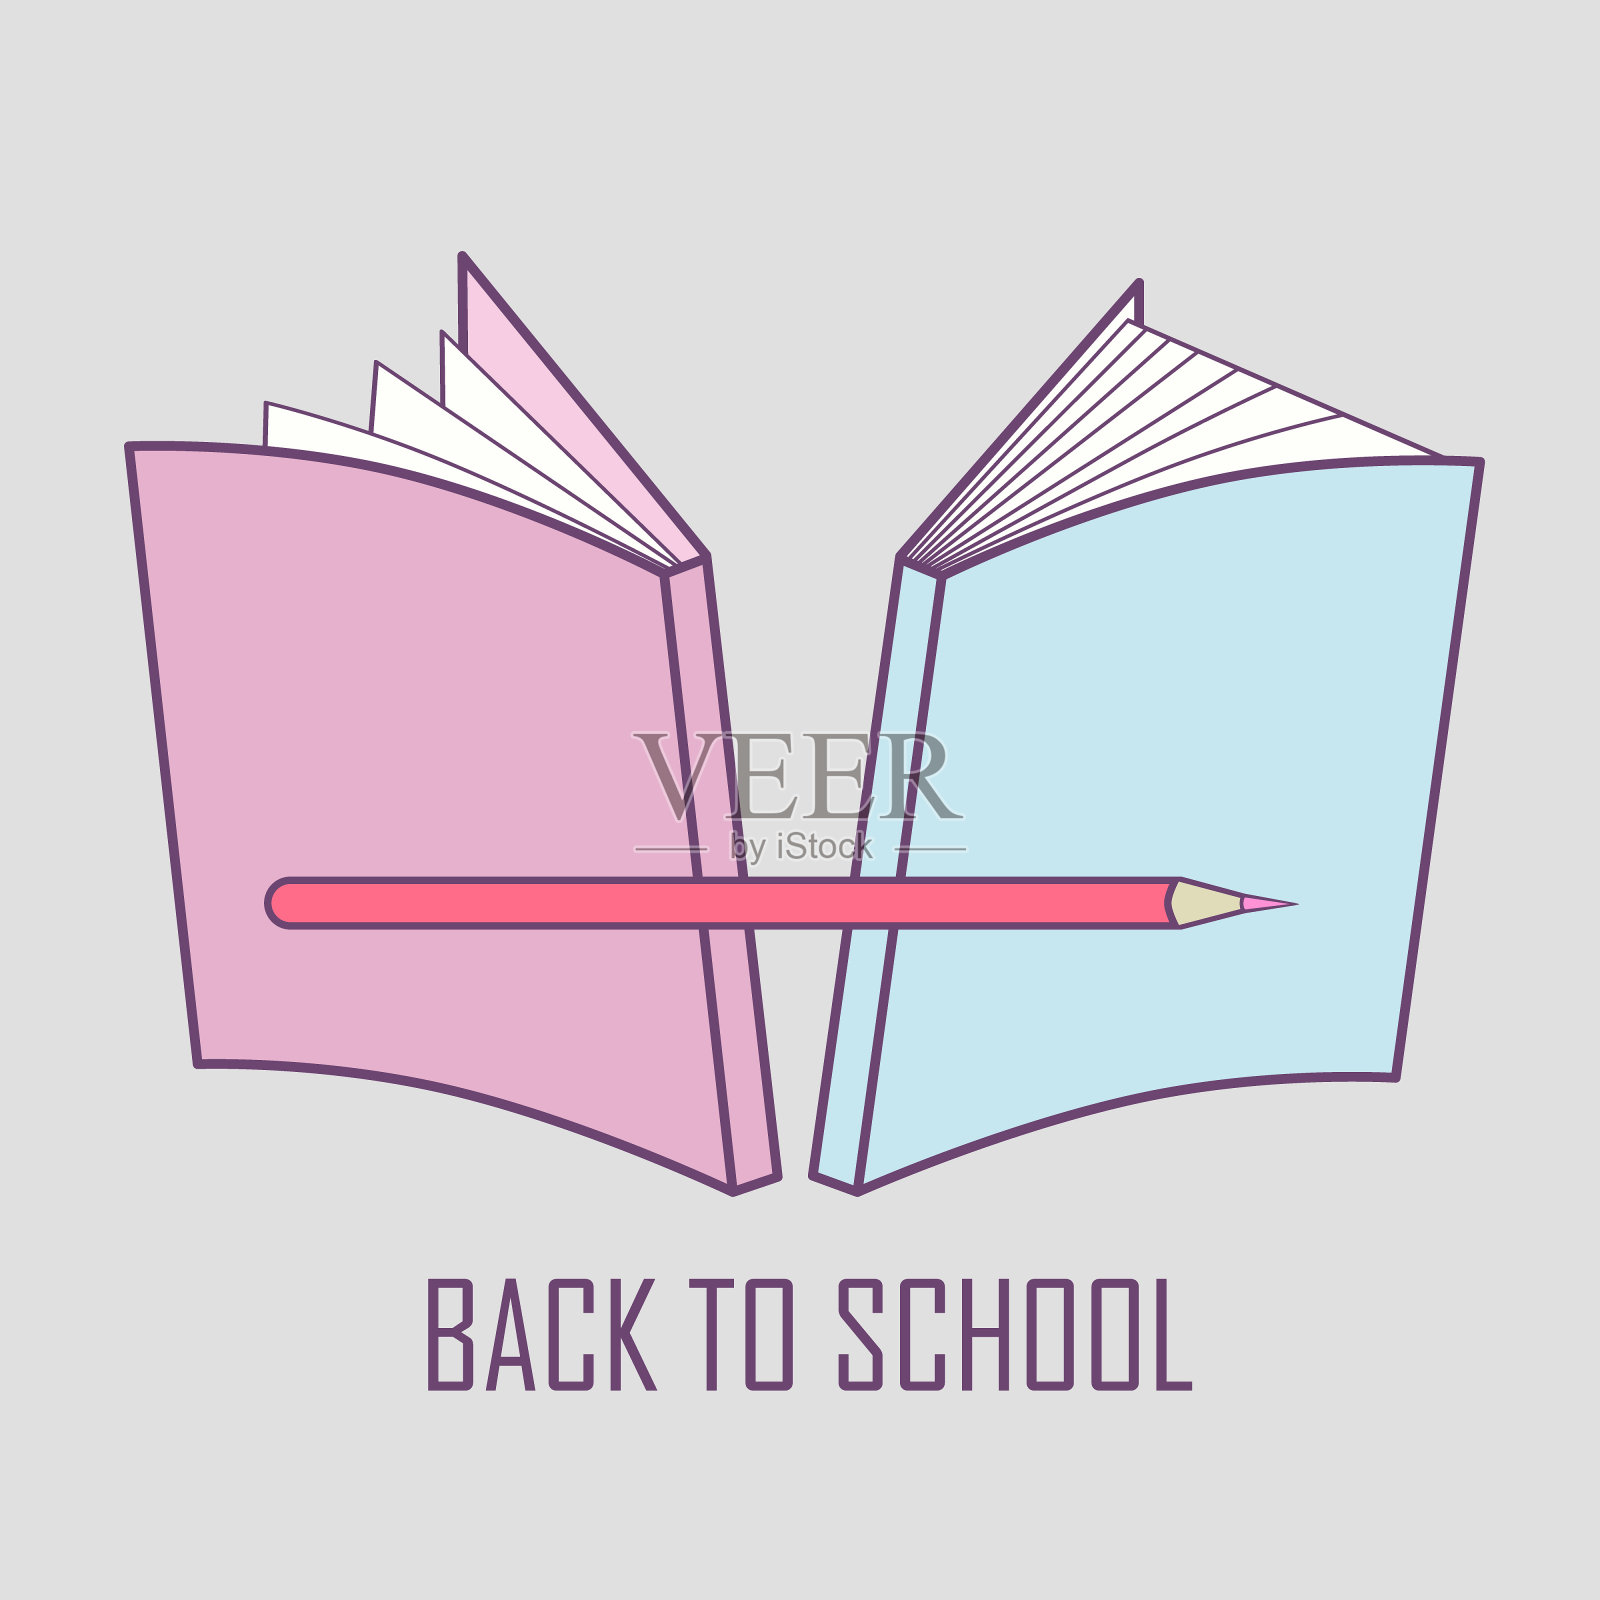 温柔的标志插图代表回到学校。矢量图像学校的东西:书和铅笔插画图片素材